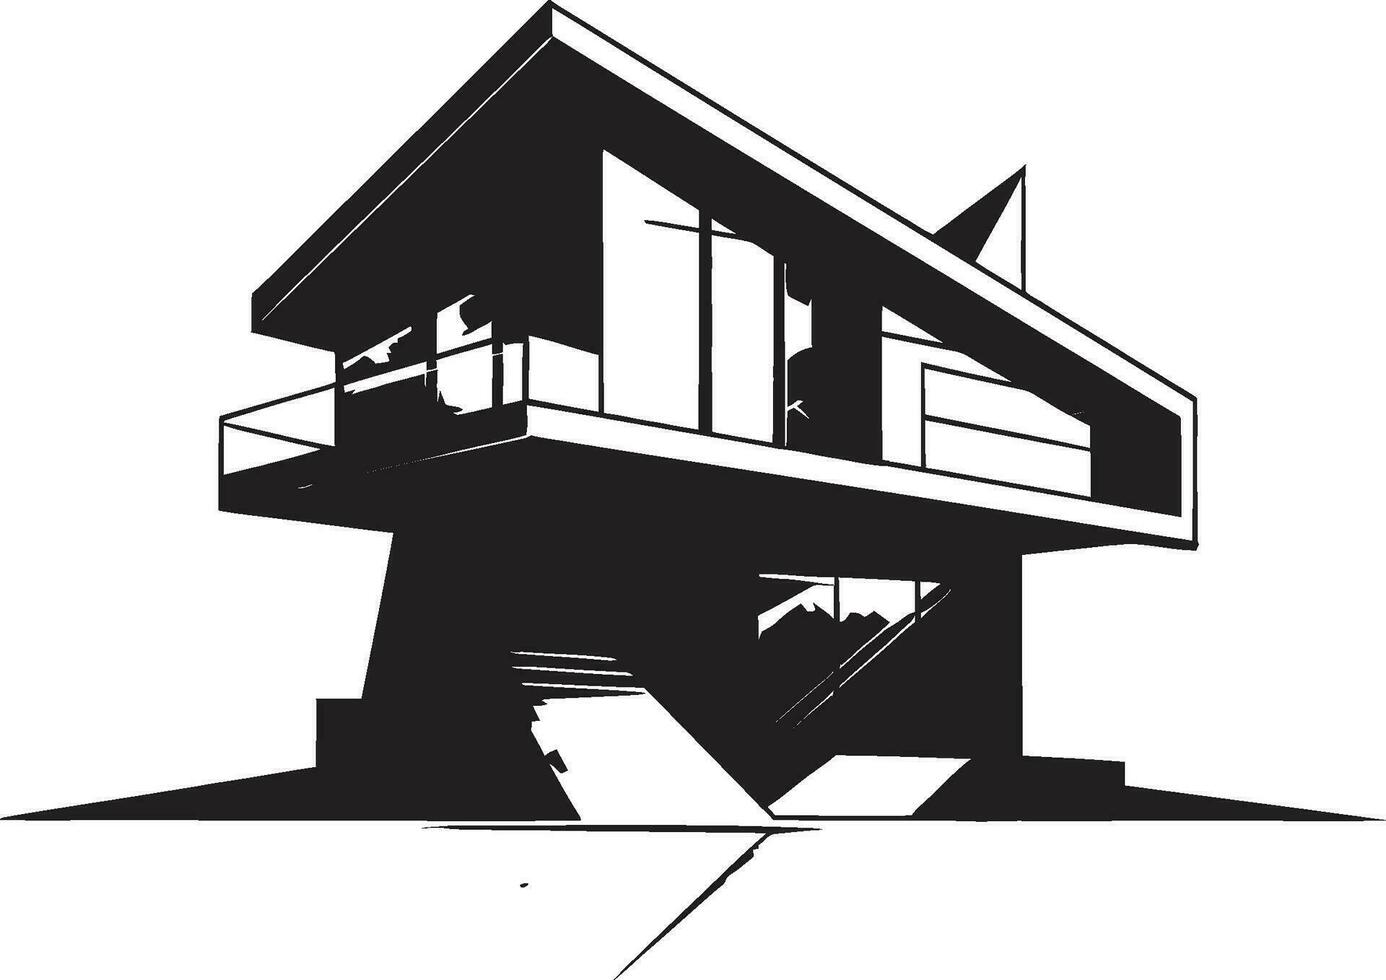 vernieuwend huis blauwdruk conceptuele huis schetsen embleem duplex woning visie schetsen ontwerp vector logo icoon